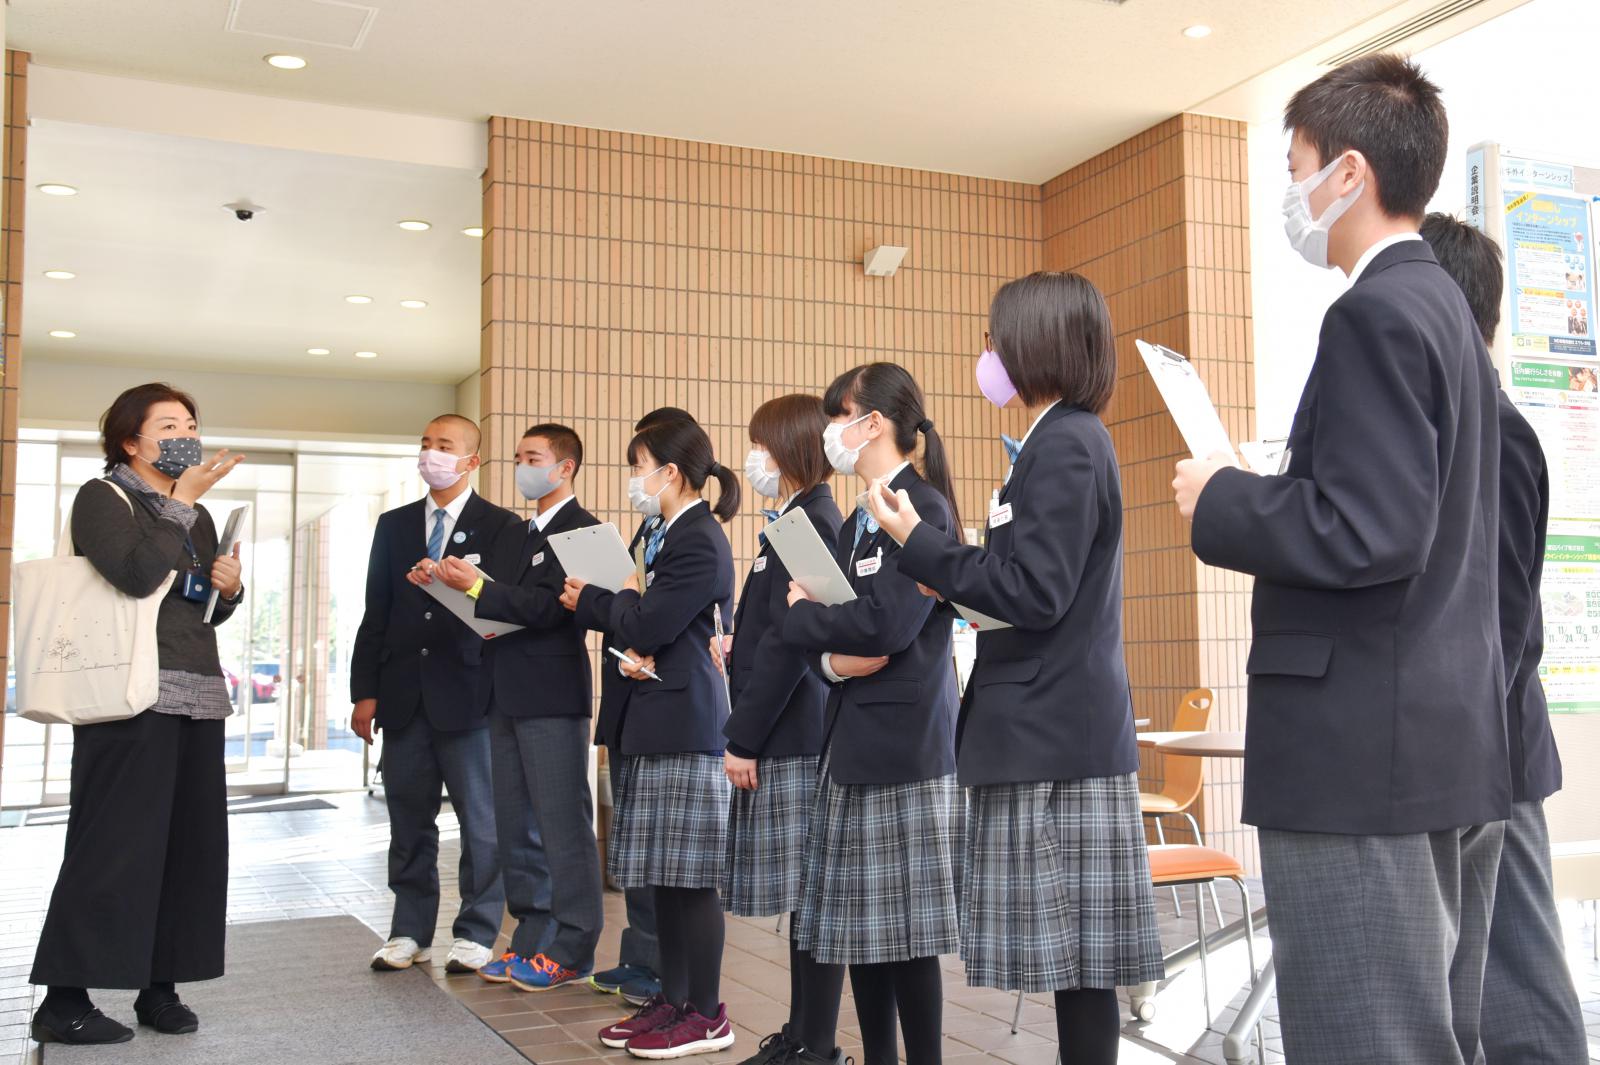 西仙北中学校の2年生が秋田キャンパスを訪問しました 秋田県立大学